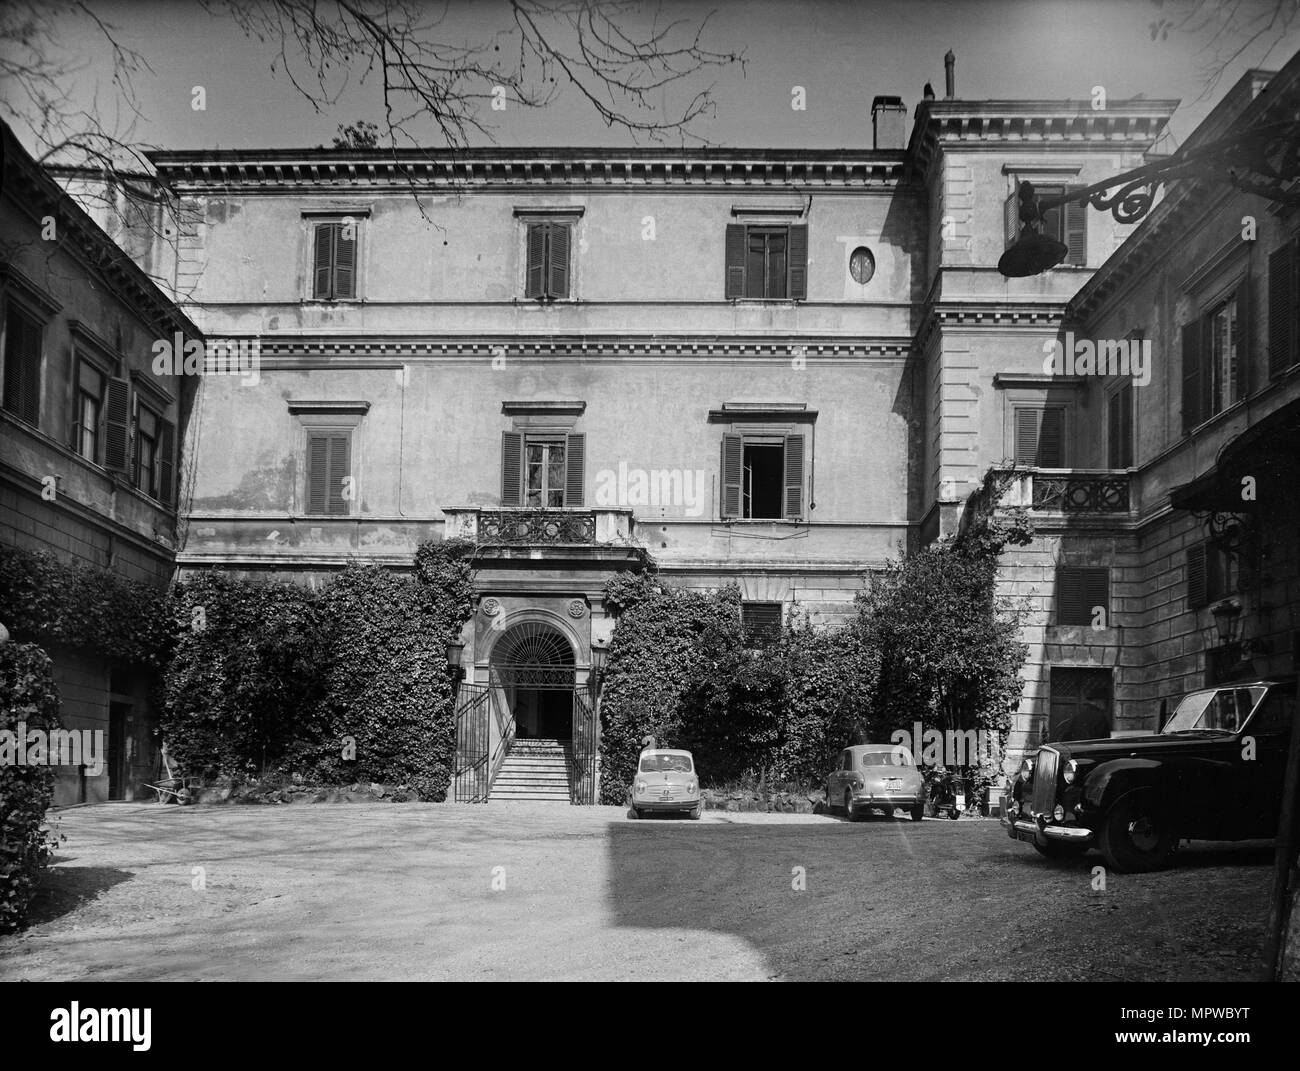 Palazzo Orsini, residenza dell'ambasciatore britannico presso la Santa Sede, Roma, Italia, 1961. Artista: sconosciuto. Foto Stock